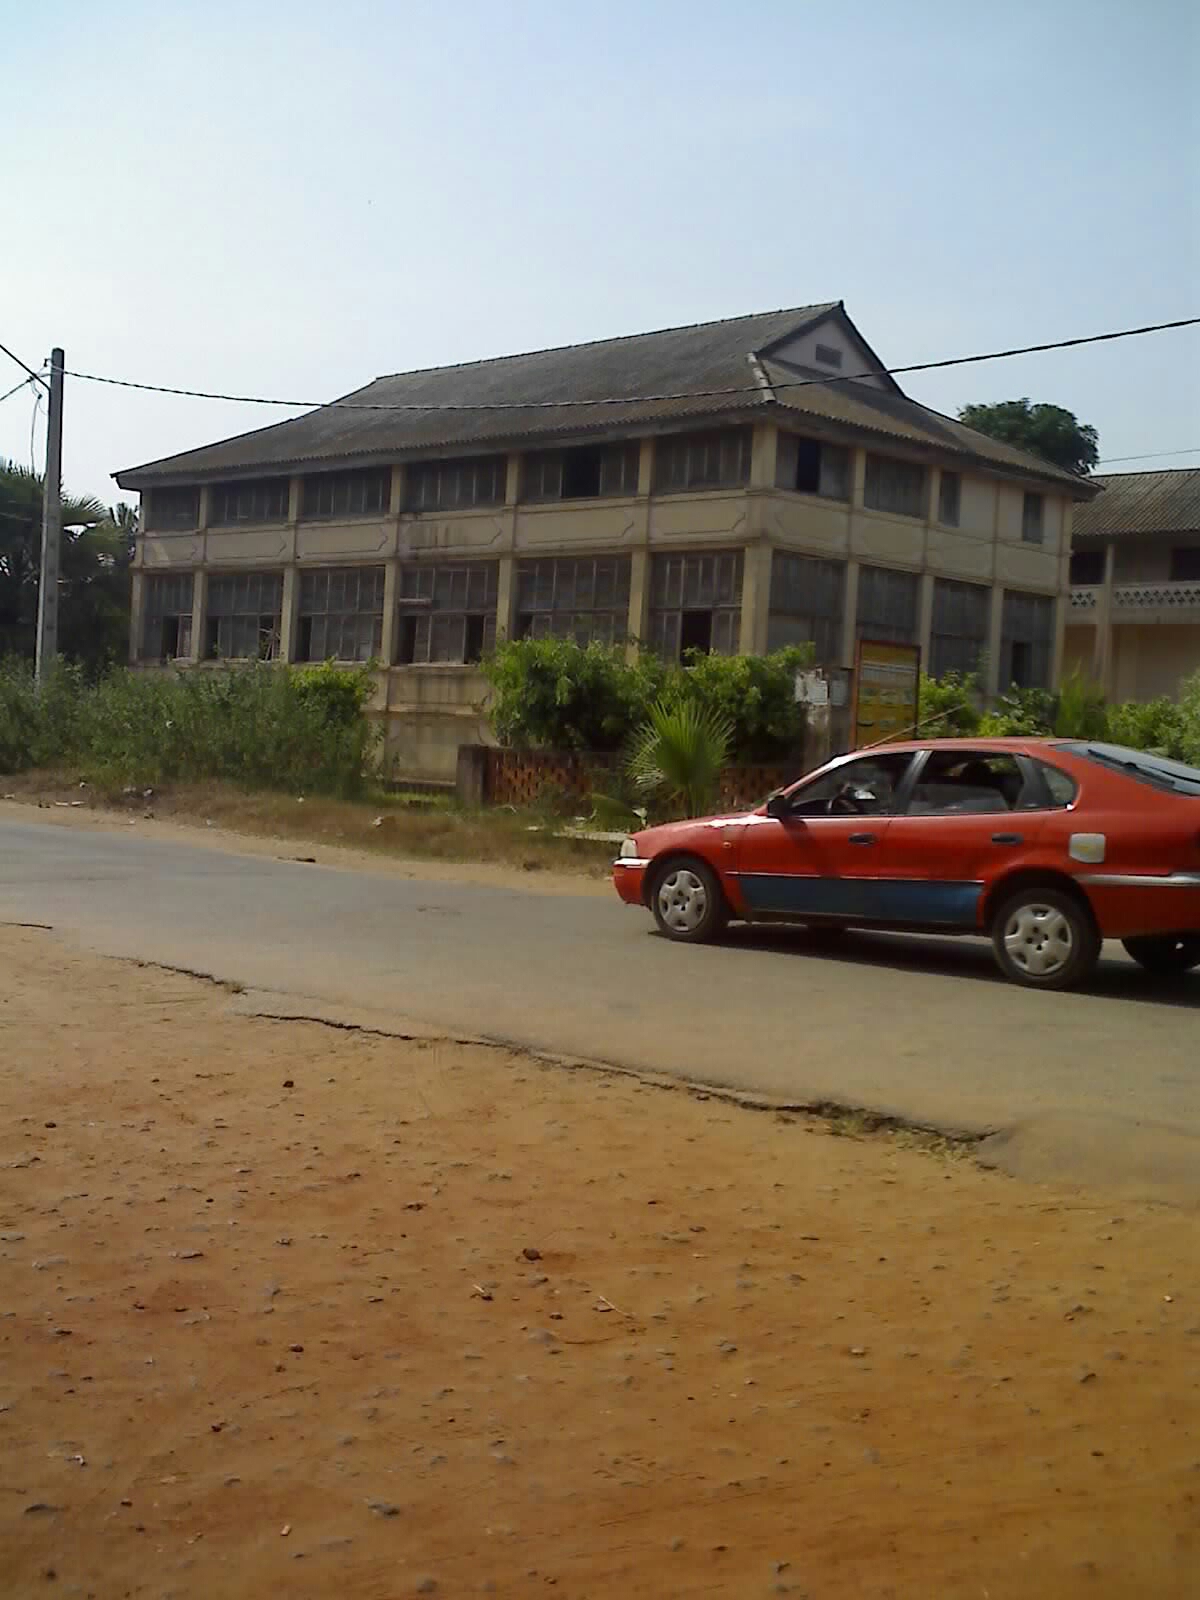 Typisches ivoirisches Taxi